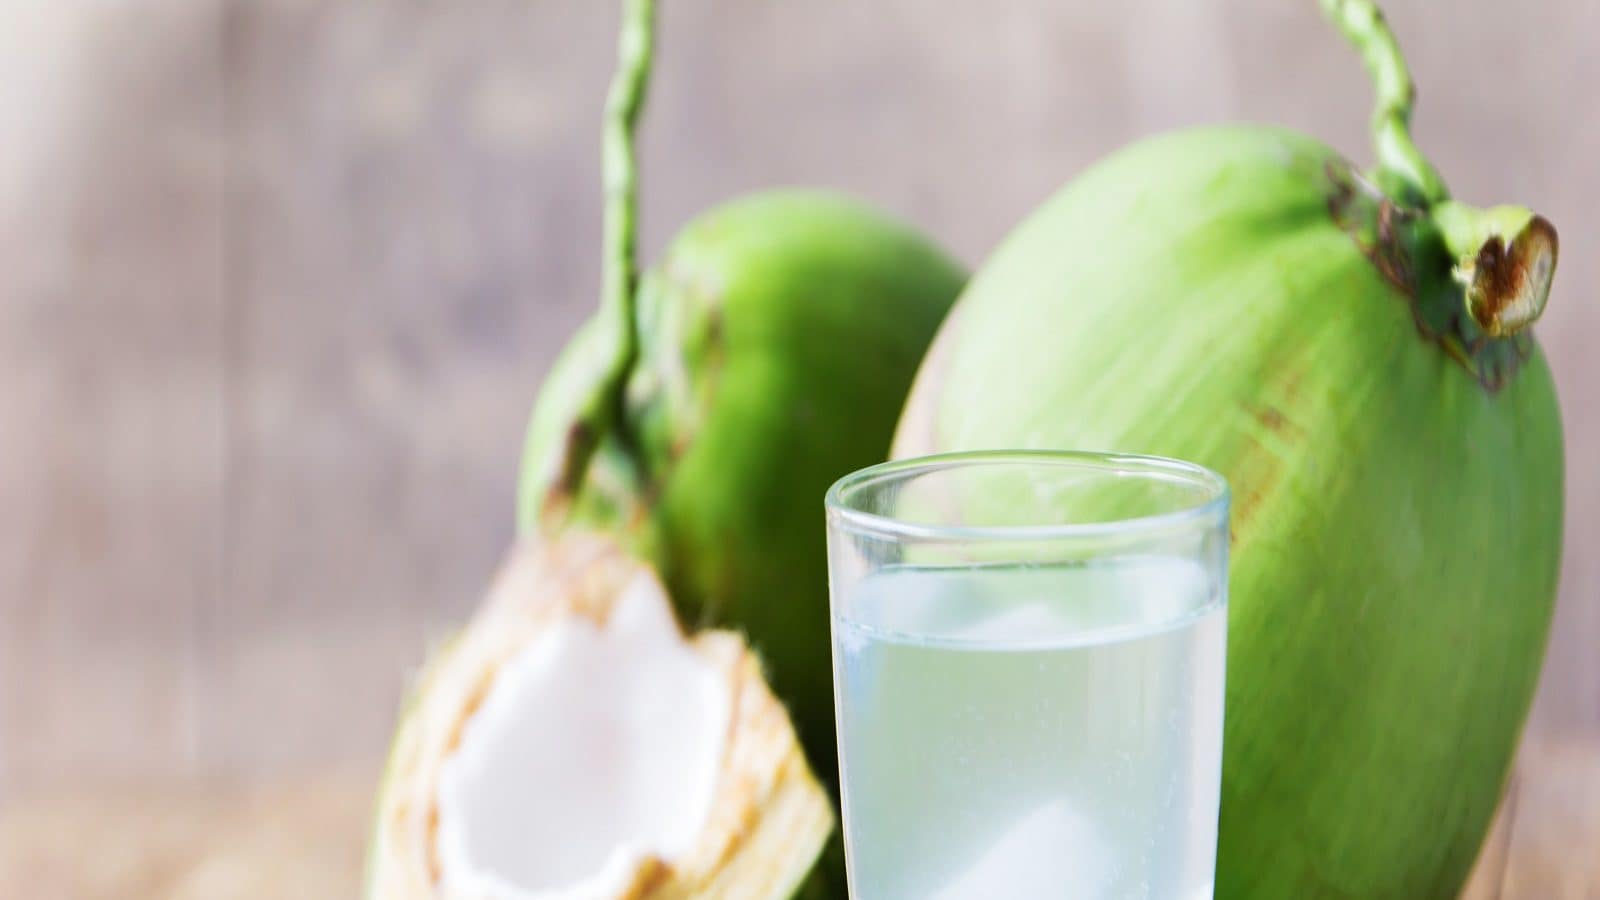 Side effects of drinking coconut water mt - Side Effects of Coconut Water: नारियल  पानी पीने से सिर्फ फायदे ही नहीं मिलते बल्कि ये नुकसान भी हो सकते हैं –  News18 हिंदी